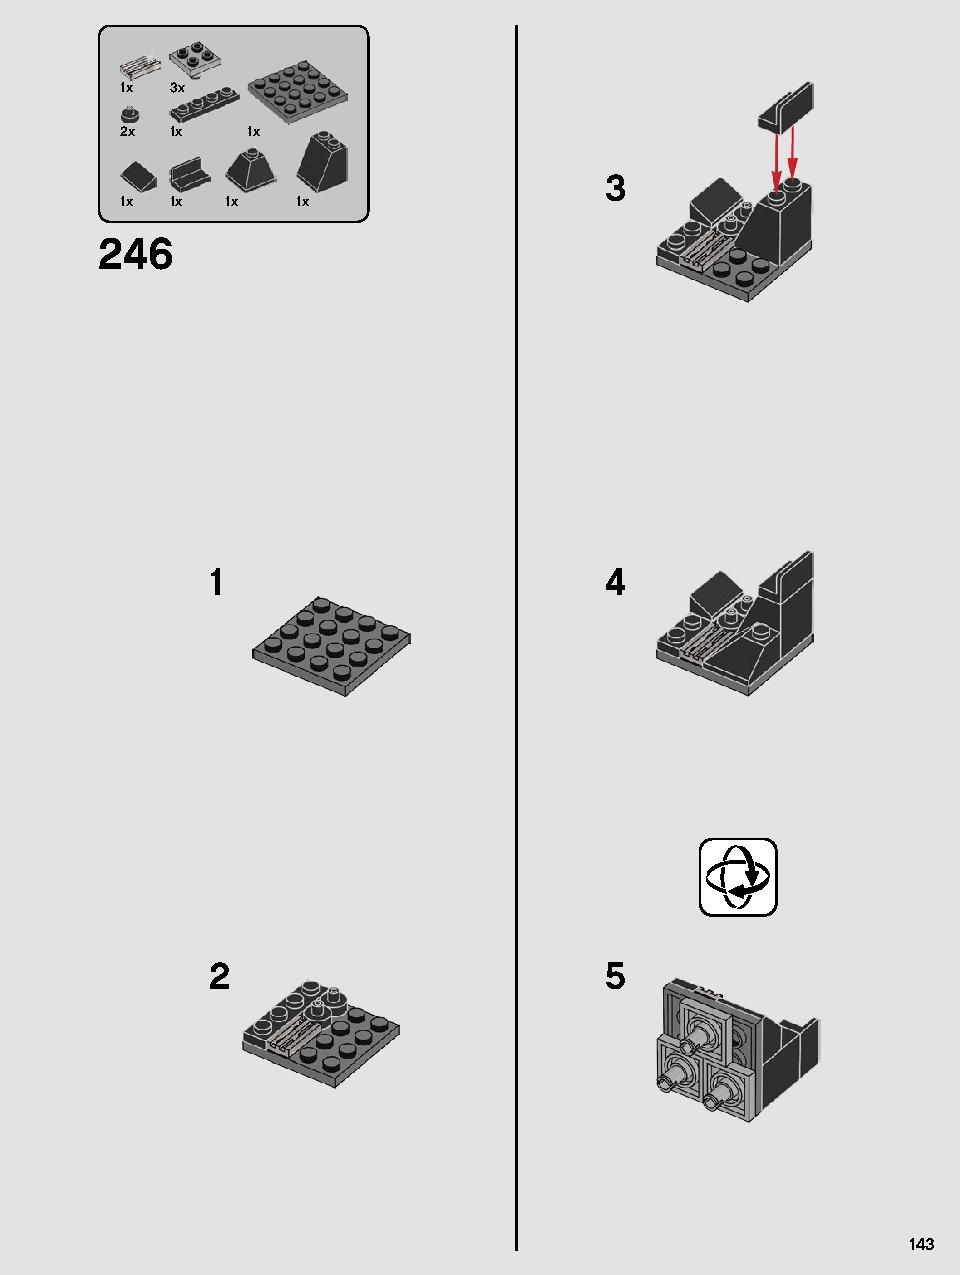 스타워즈 카일로 렌의 셔틀™ 75256 레고 세트 제품정보 레고 조립설명서 143 page